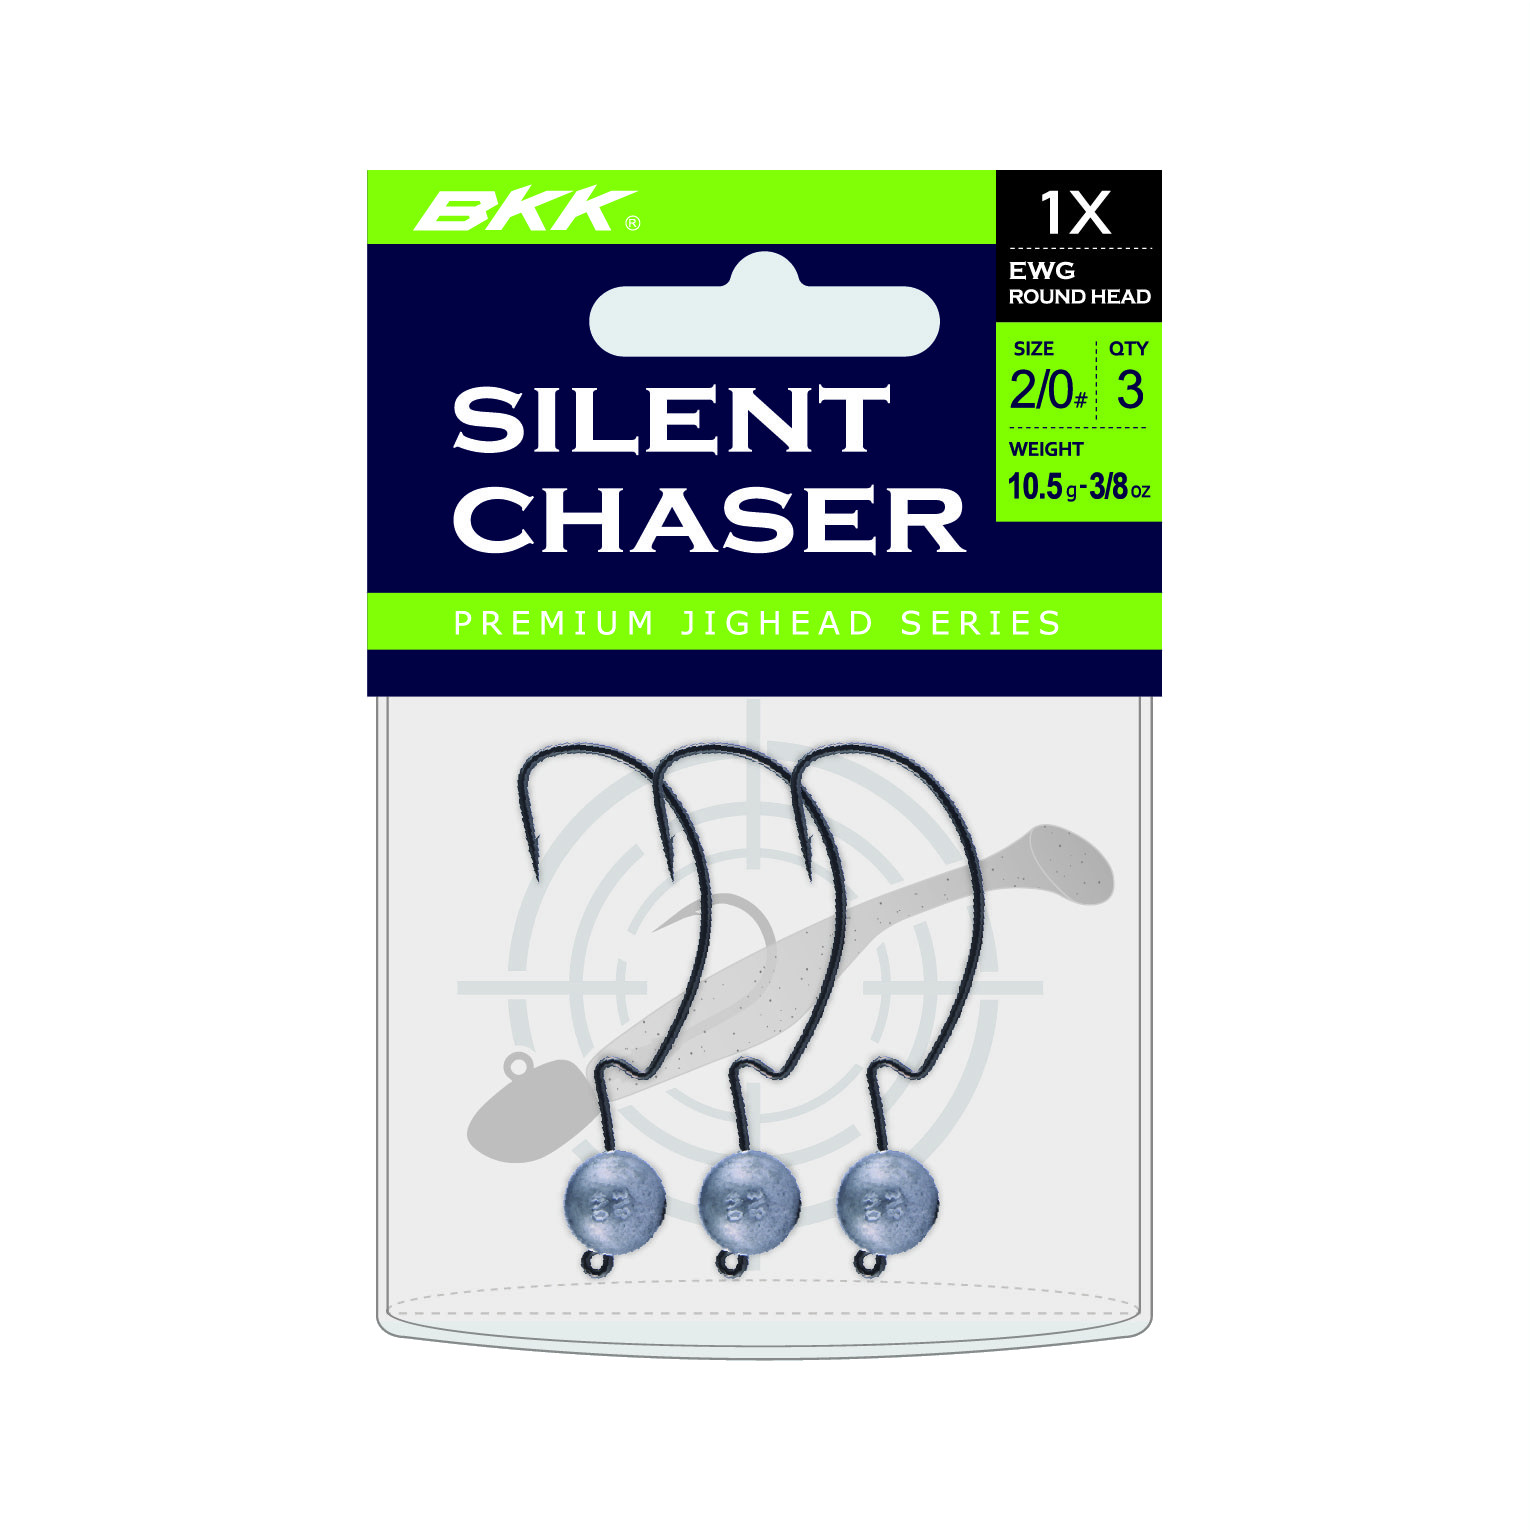 BKK Silent Chaser 1X EWG Round Head Jighead #2/0